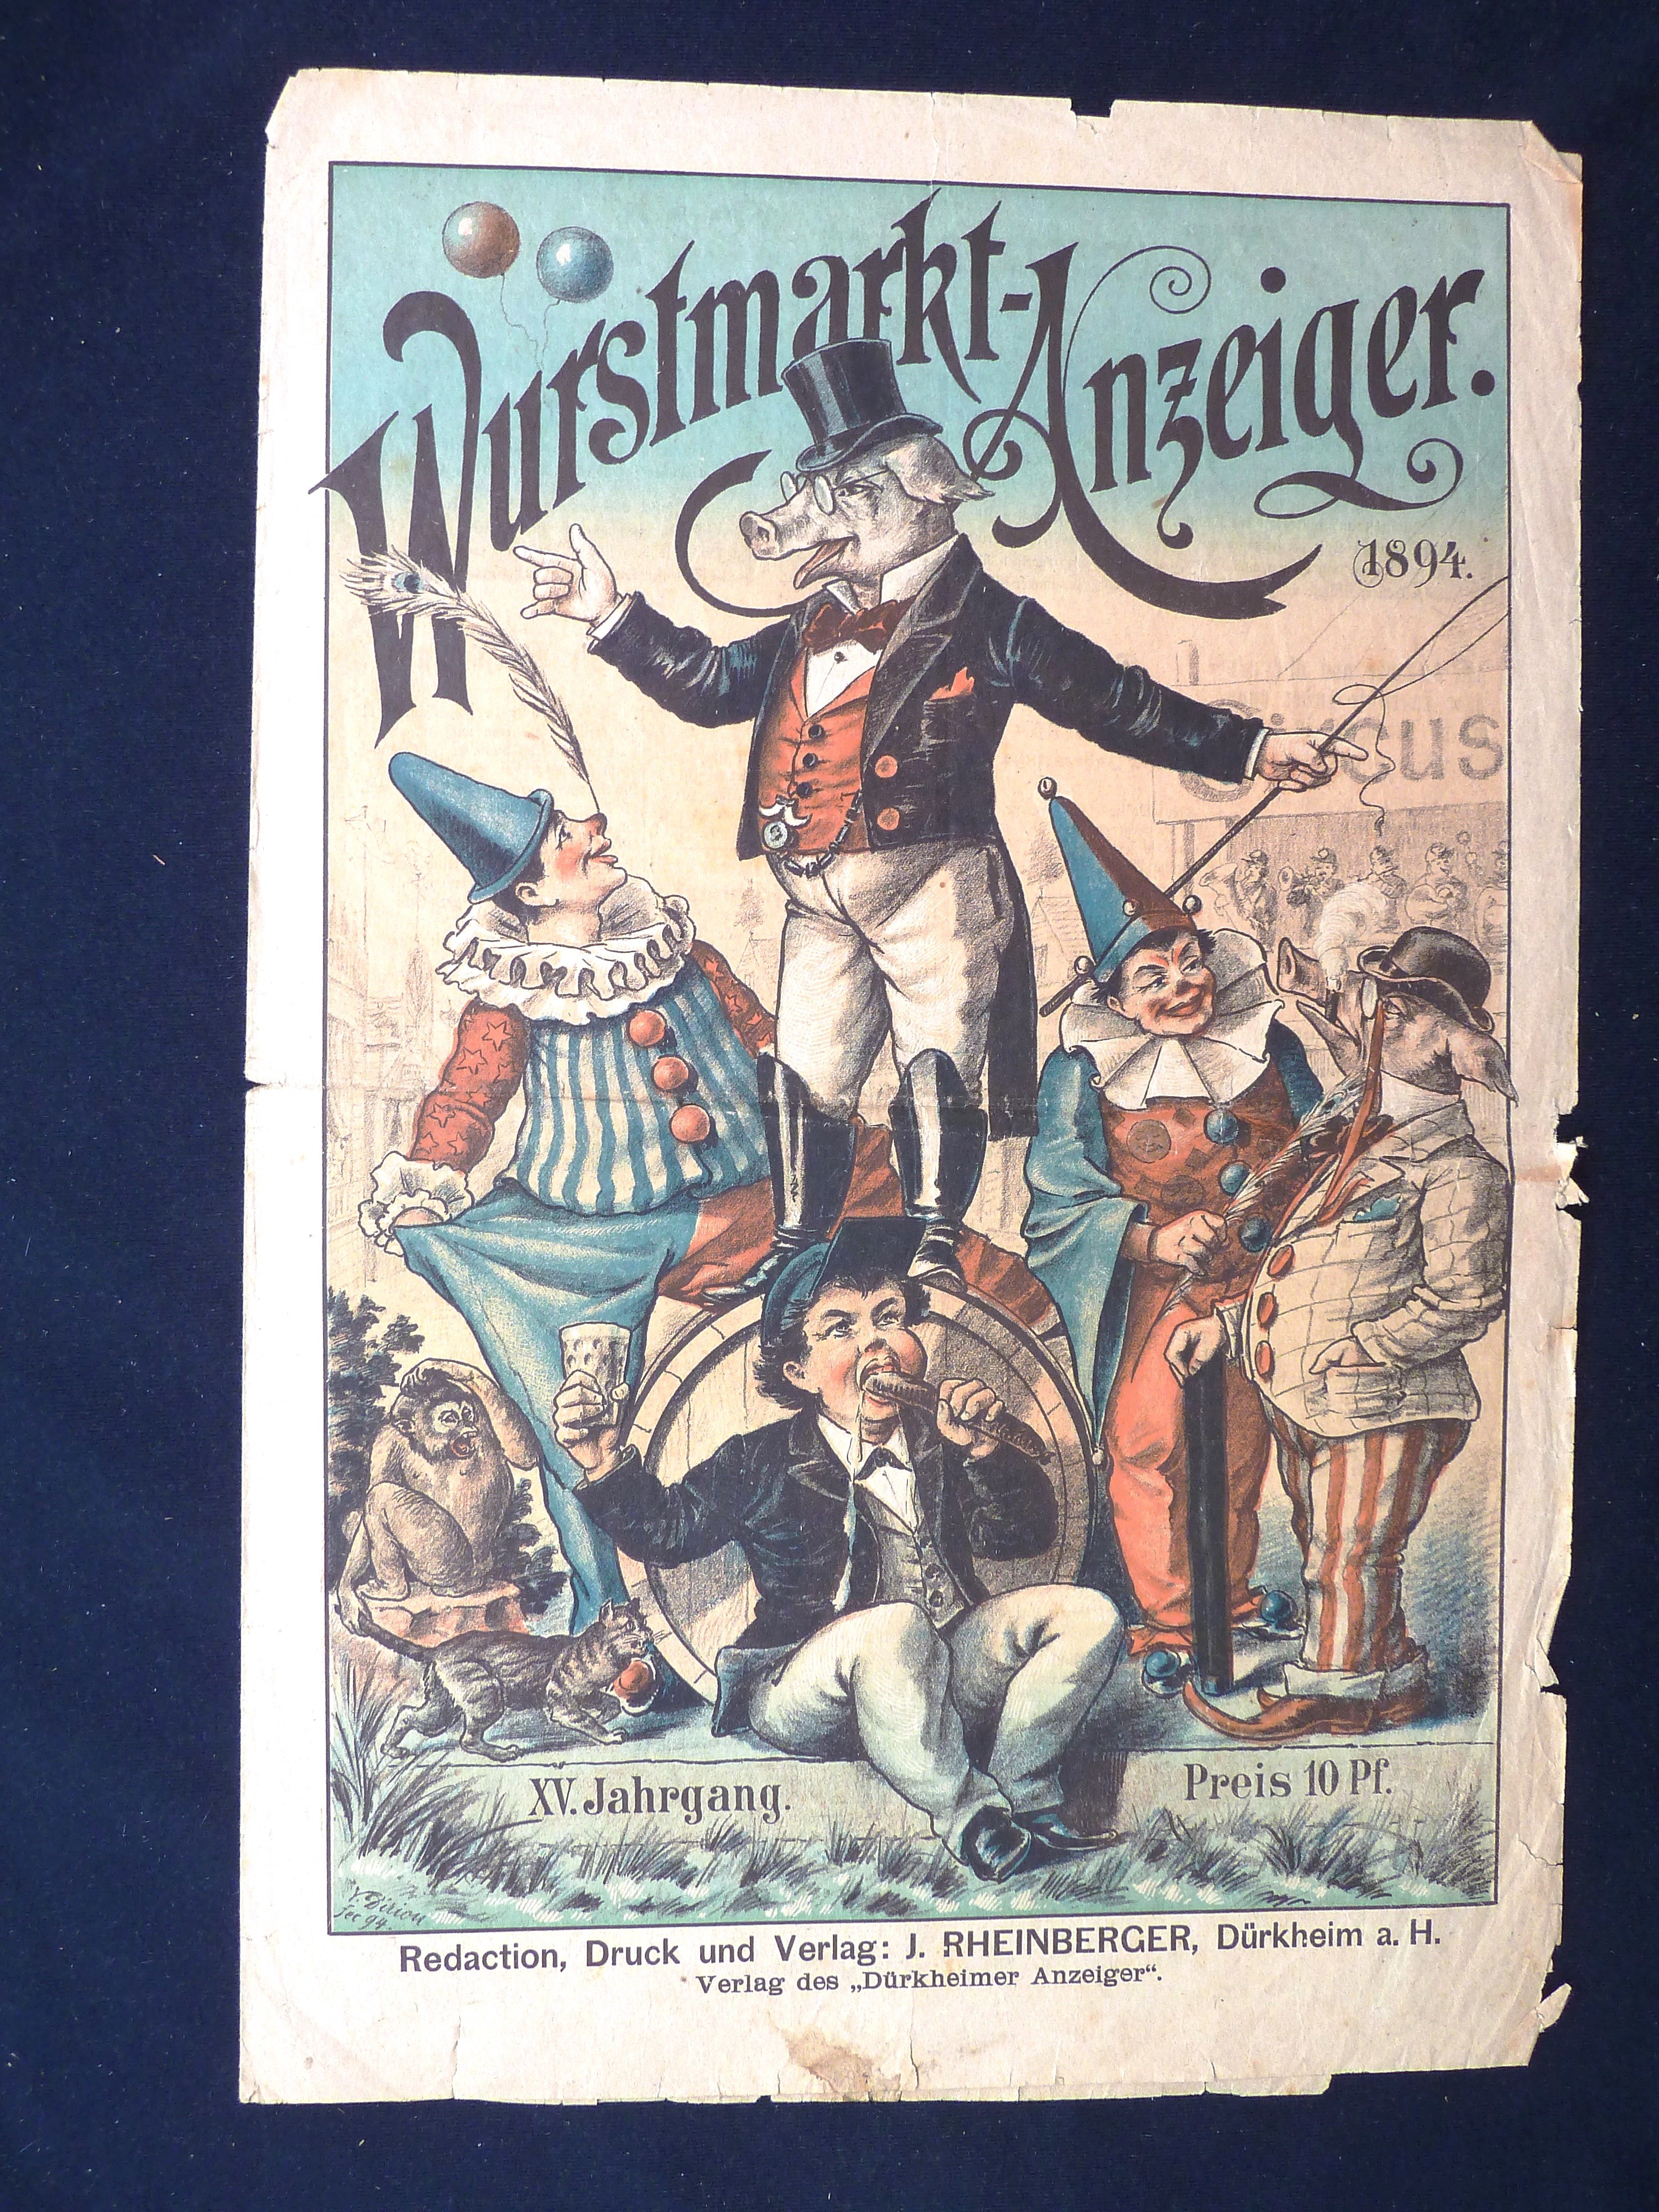 Zeitung; Anzeiger: "Wurstmarkt-Anzeiger"; J. Rheinberger, V. Dirion; Dürkheim a/H.; 1894 (Stadtmuseum Bad Dürkheim, Museumsgesellschaft Bad Dürkheim e.V. CC BY-NC-SA)